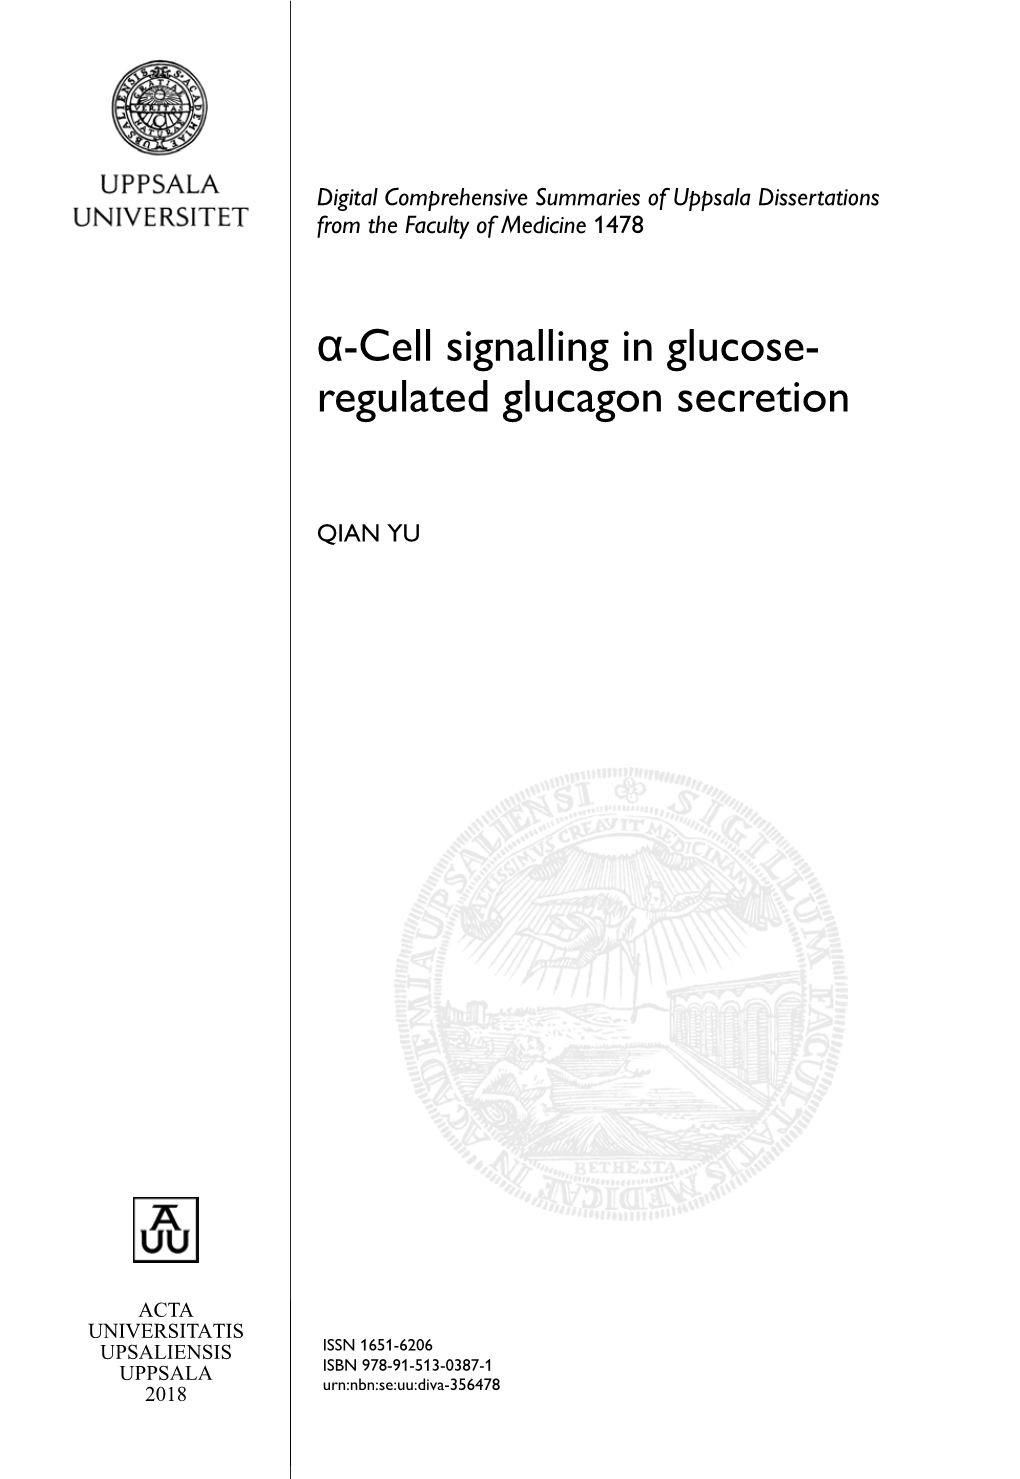 Α-Cell Signalling in Glucose- Regulated Glucagon Secretion